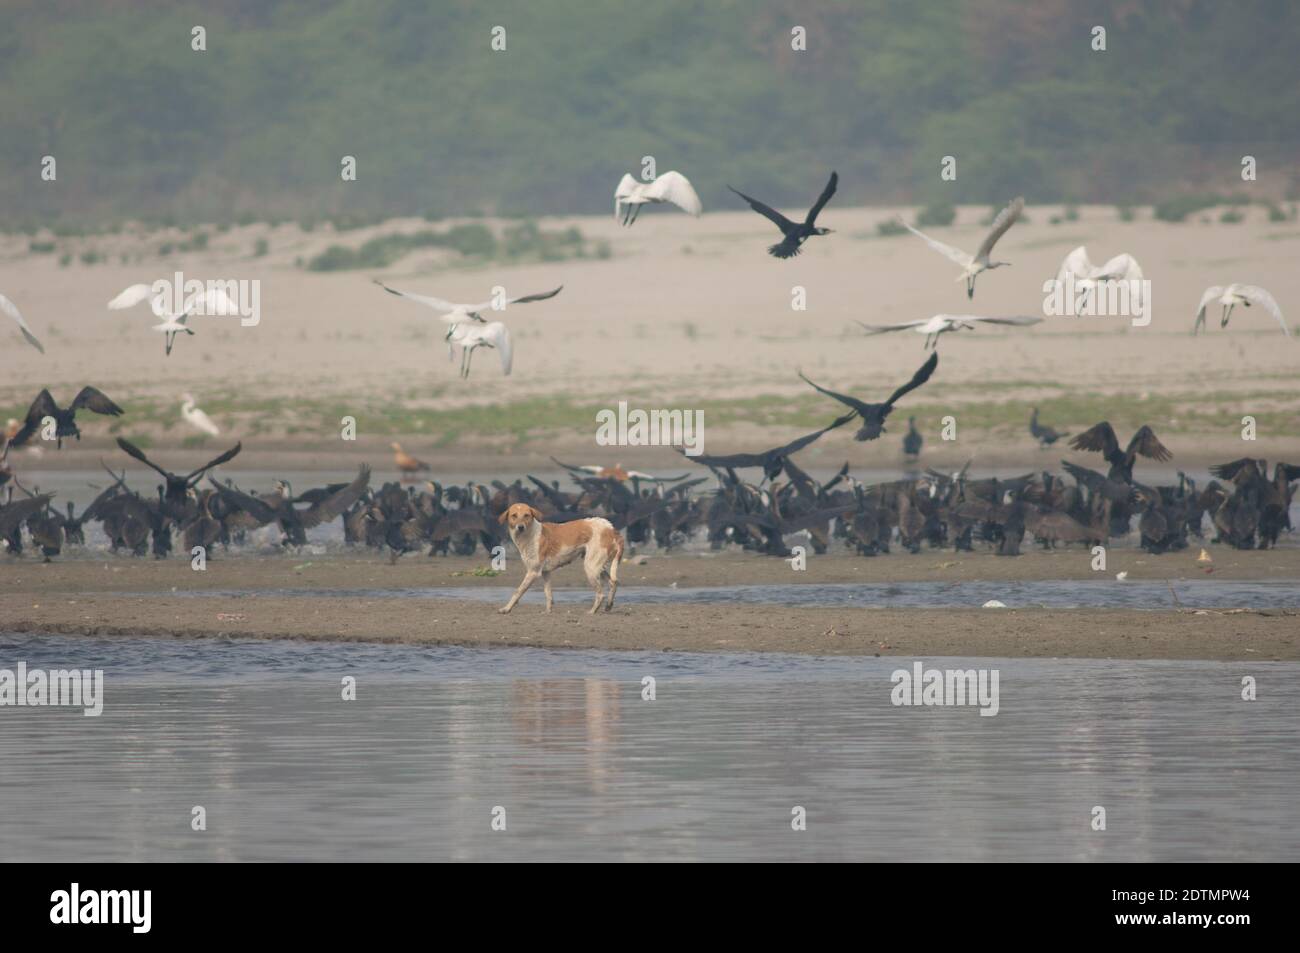 Cane feriale Canis lupus familiaris e grandi cormorani e spatole eurasiane sullo sfondo. Fiume Yamuna. Agra. Utttar Pradesh. India. Foto Stock